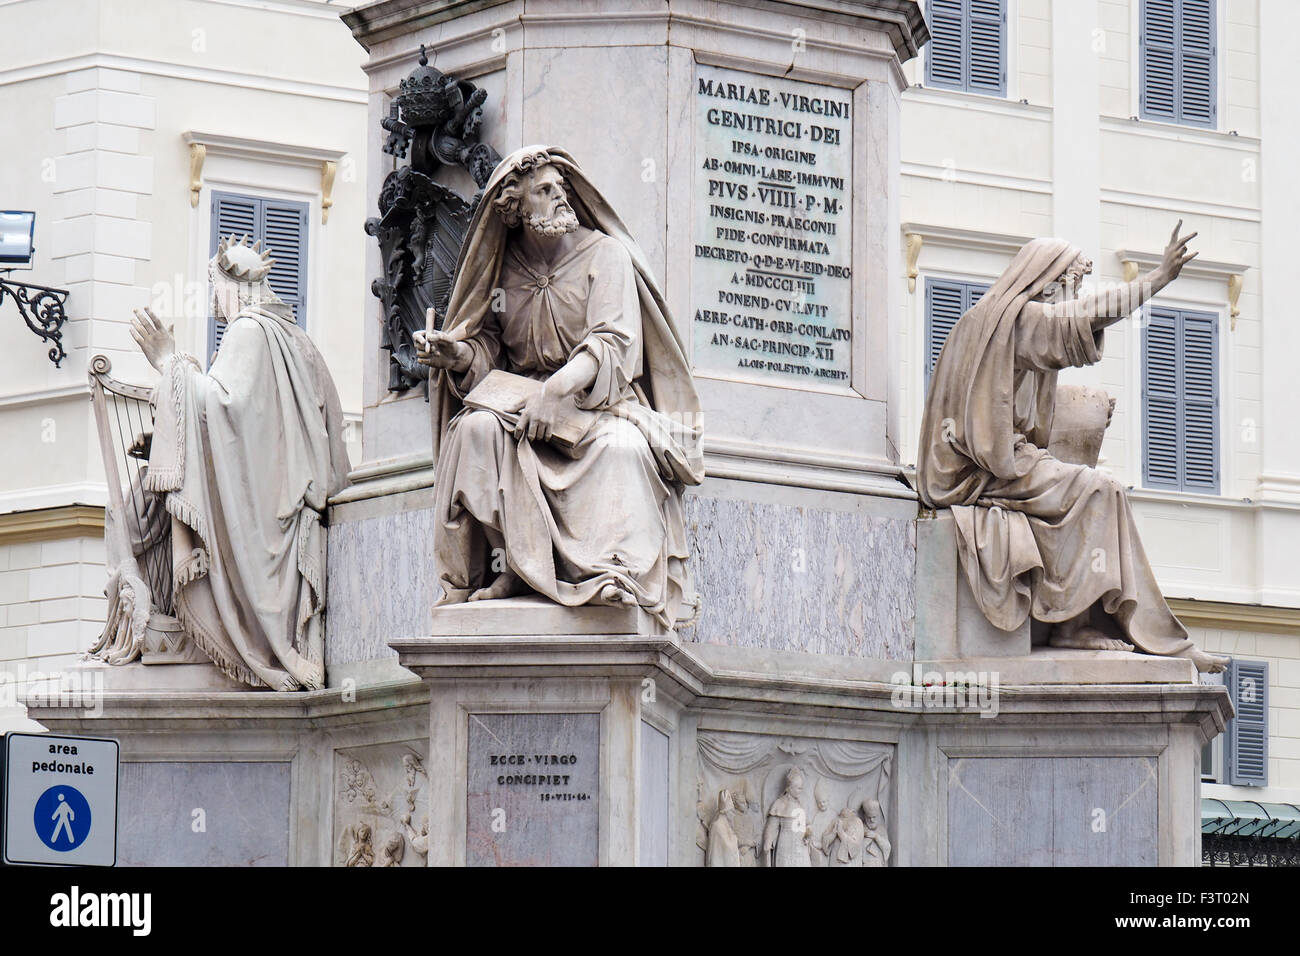 Alla base della colonna dell'Immacolata Concezione o la Colonna della Immacolata, Roma. Foto Stock